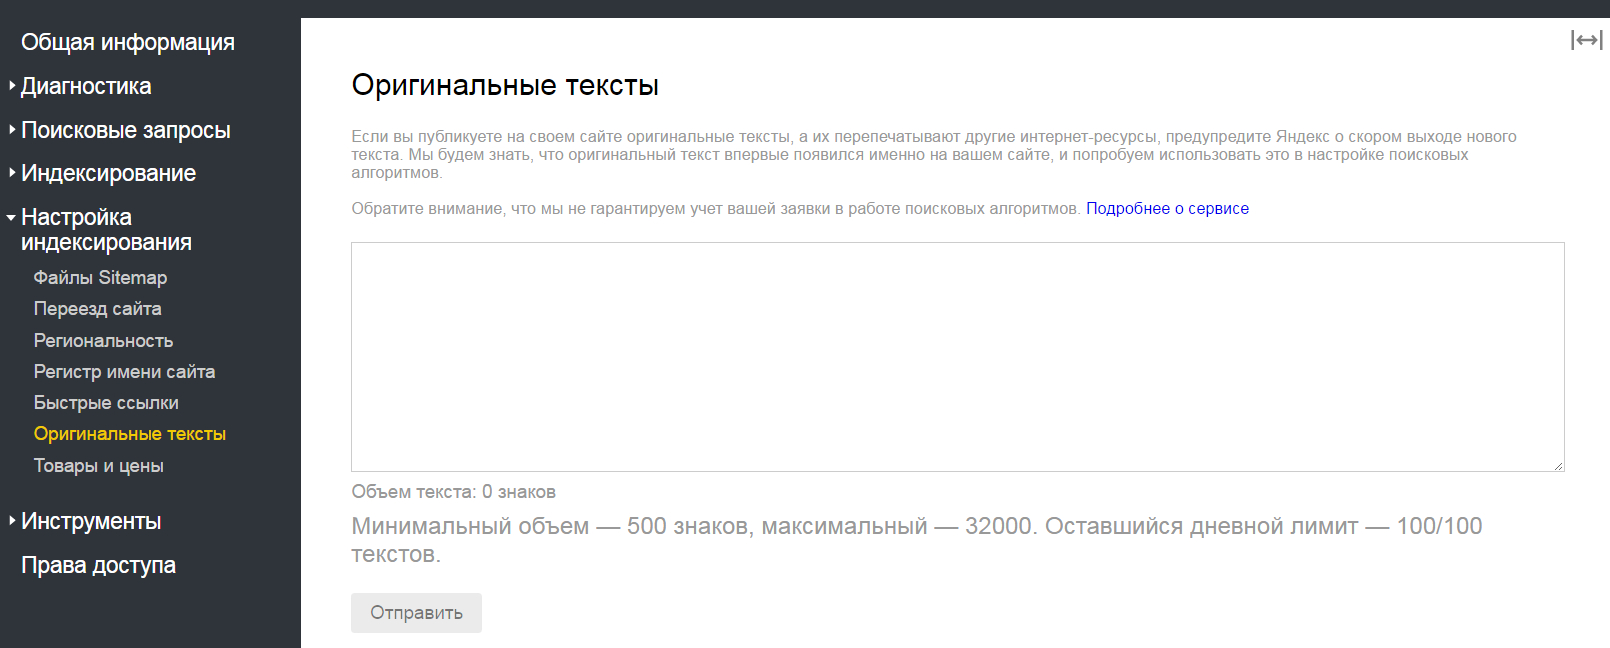 Сервис «Оригинальные тексты» в новом Яндекс.Вебмастере.